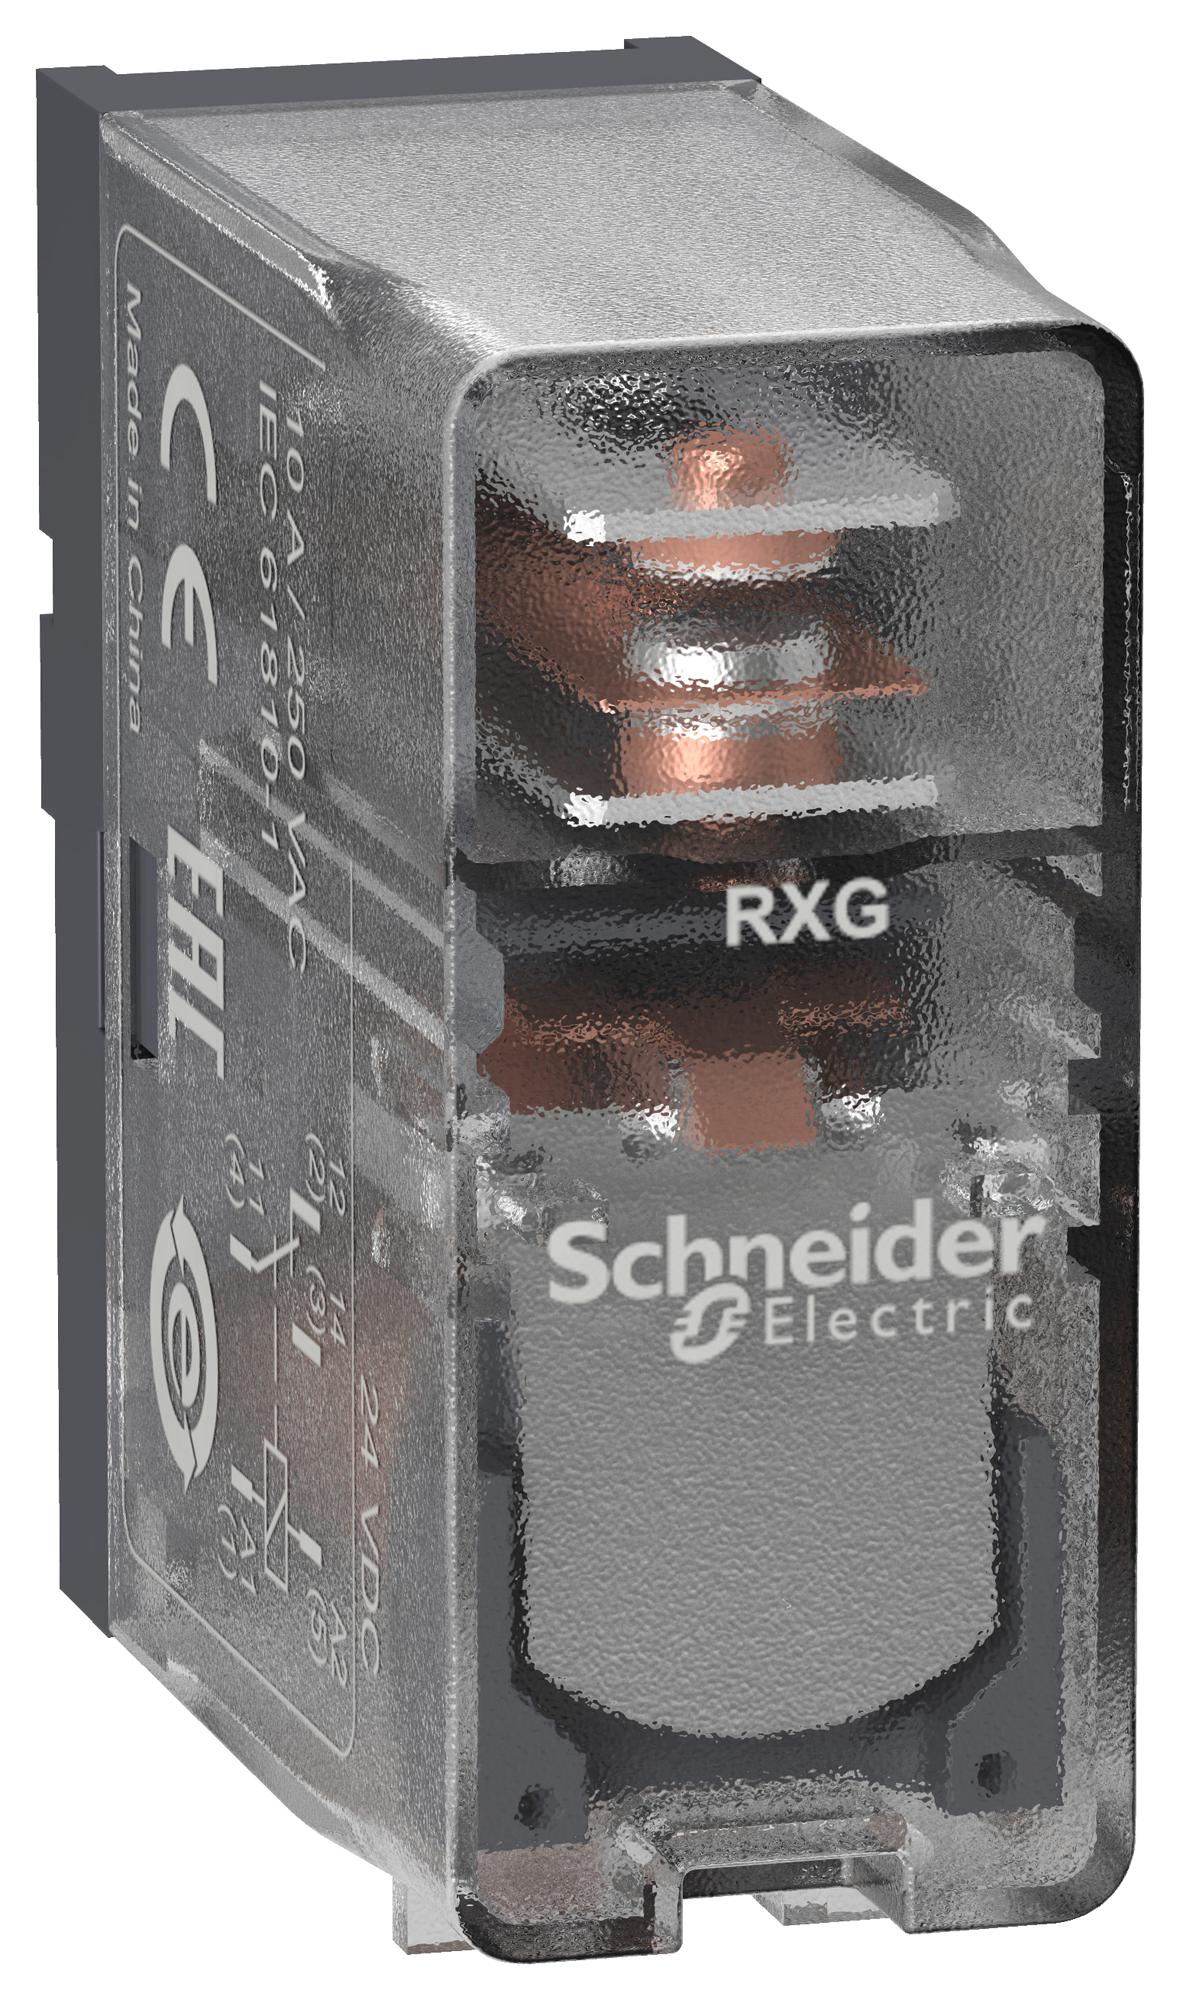 RXG15JD POWER RELAY, SPDT, 10A, 250VAC SCHNEIDER ELECTRIC